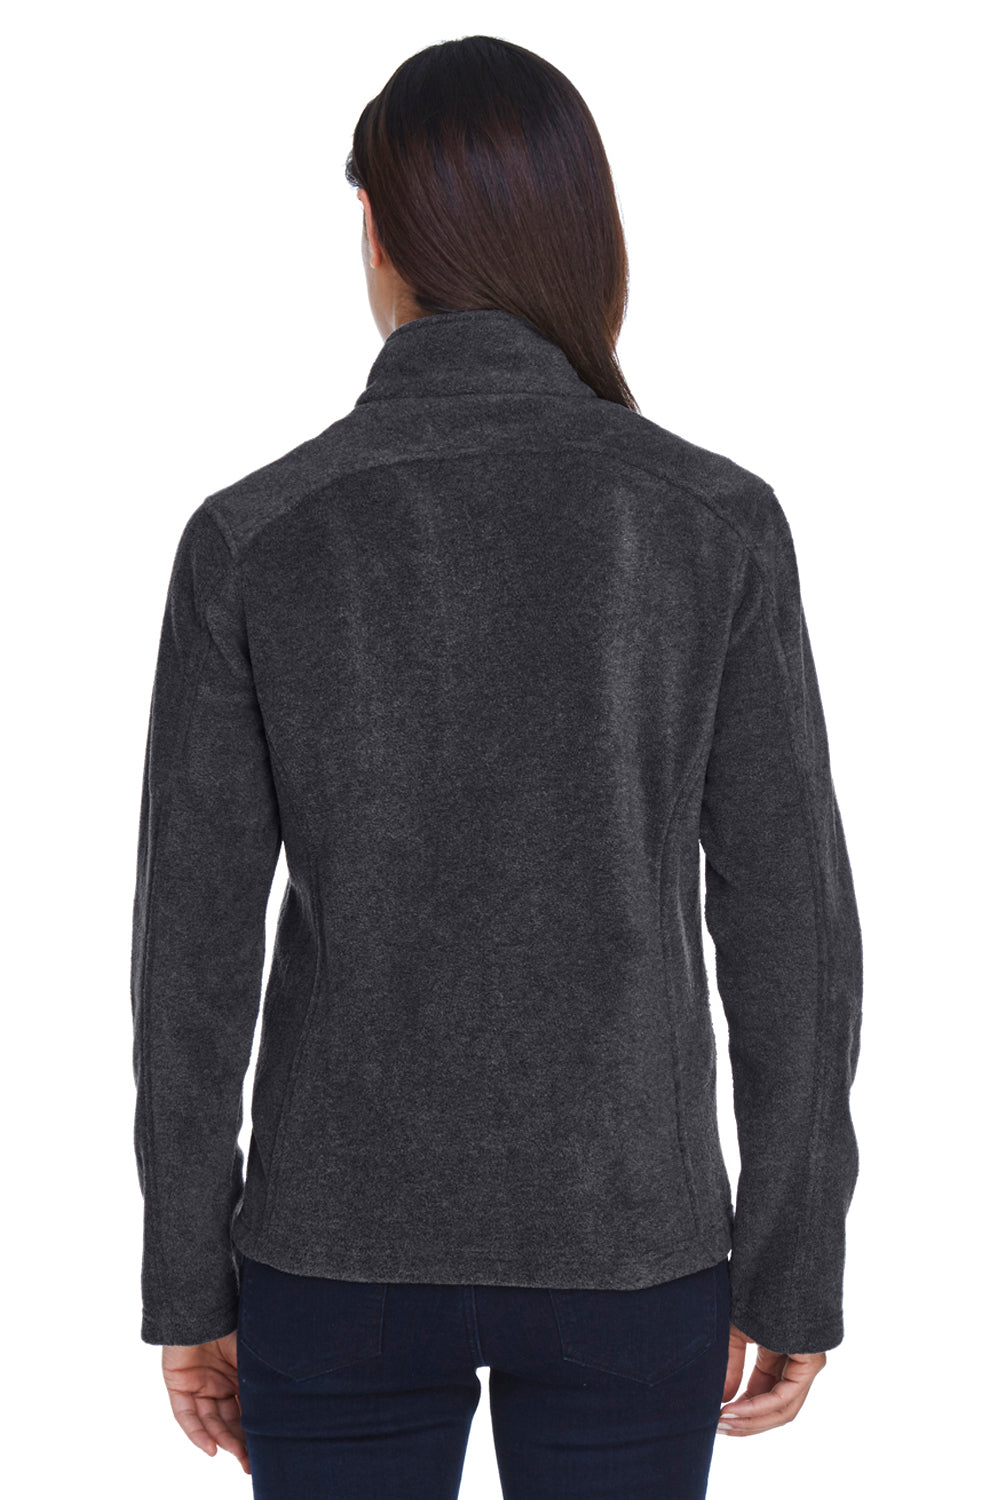 Core 365 78190 Womens Journey Full Zip Fleece Jacket Heather Charcoal Grey Back